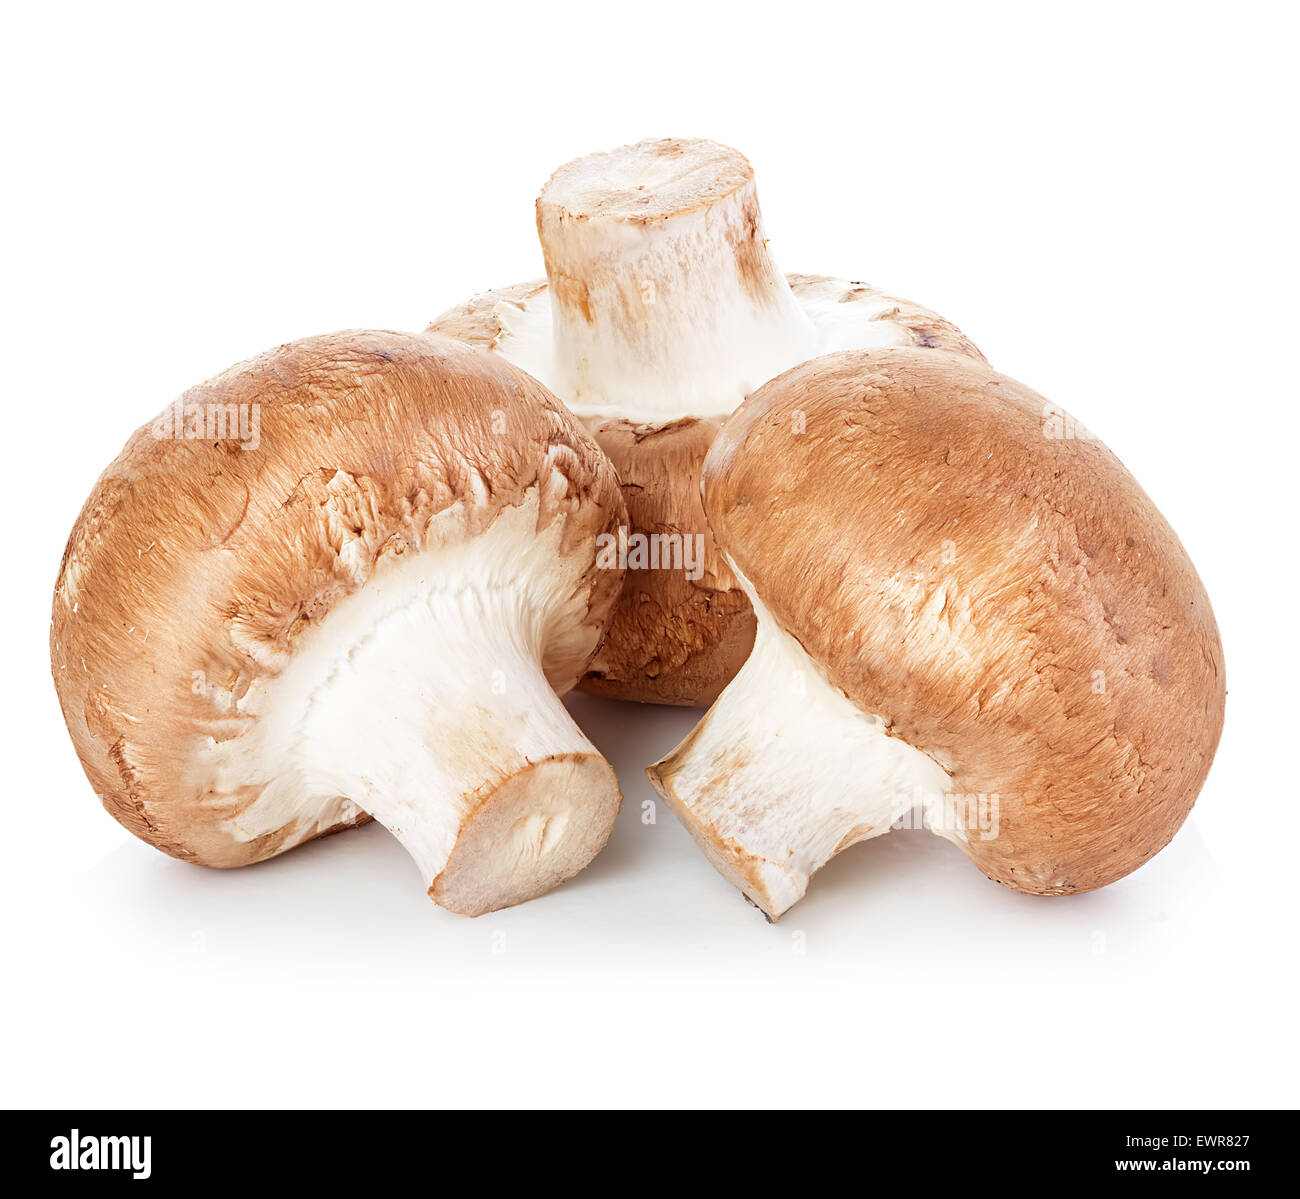 Marrone di funghi champignon Foto Stock